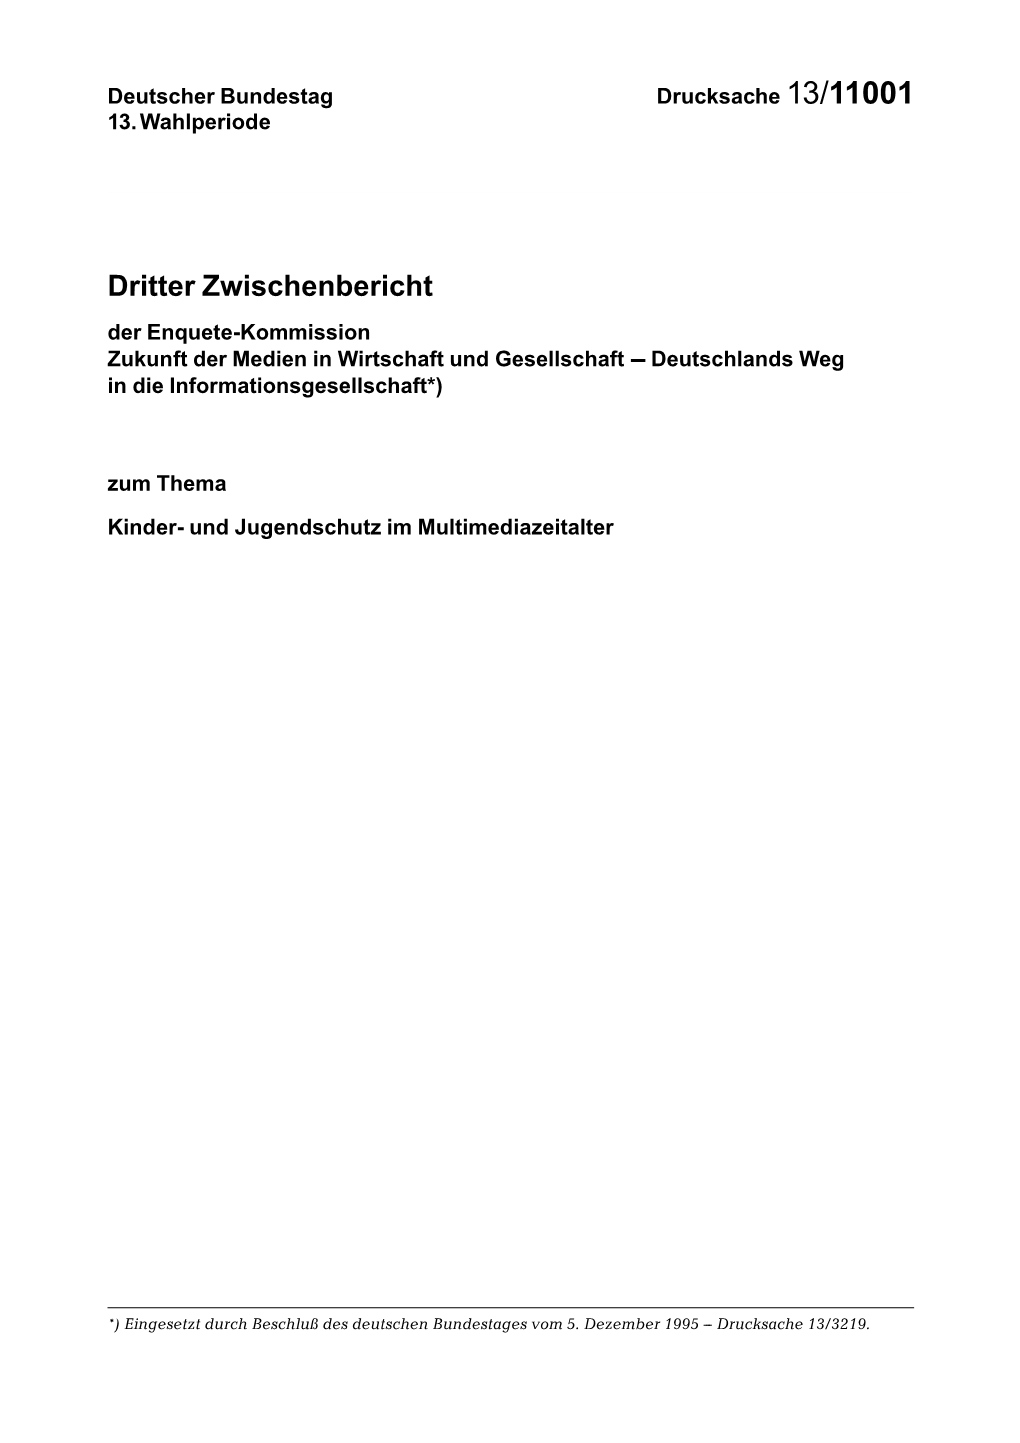 Dritter Zwischenbericht Der Enquete-Kommission Zukunft Der Medien in Wirtschaft Und Gesellschaft --- Deutschlands Weg in Die Informationsgesellschaft*)